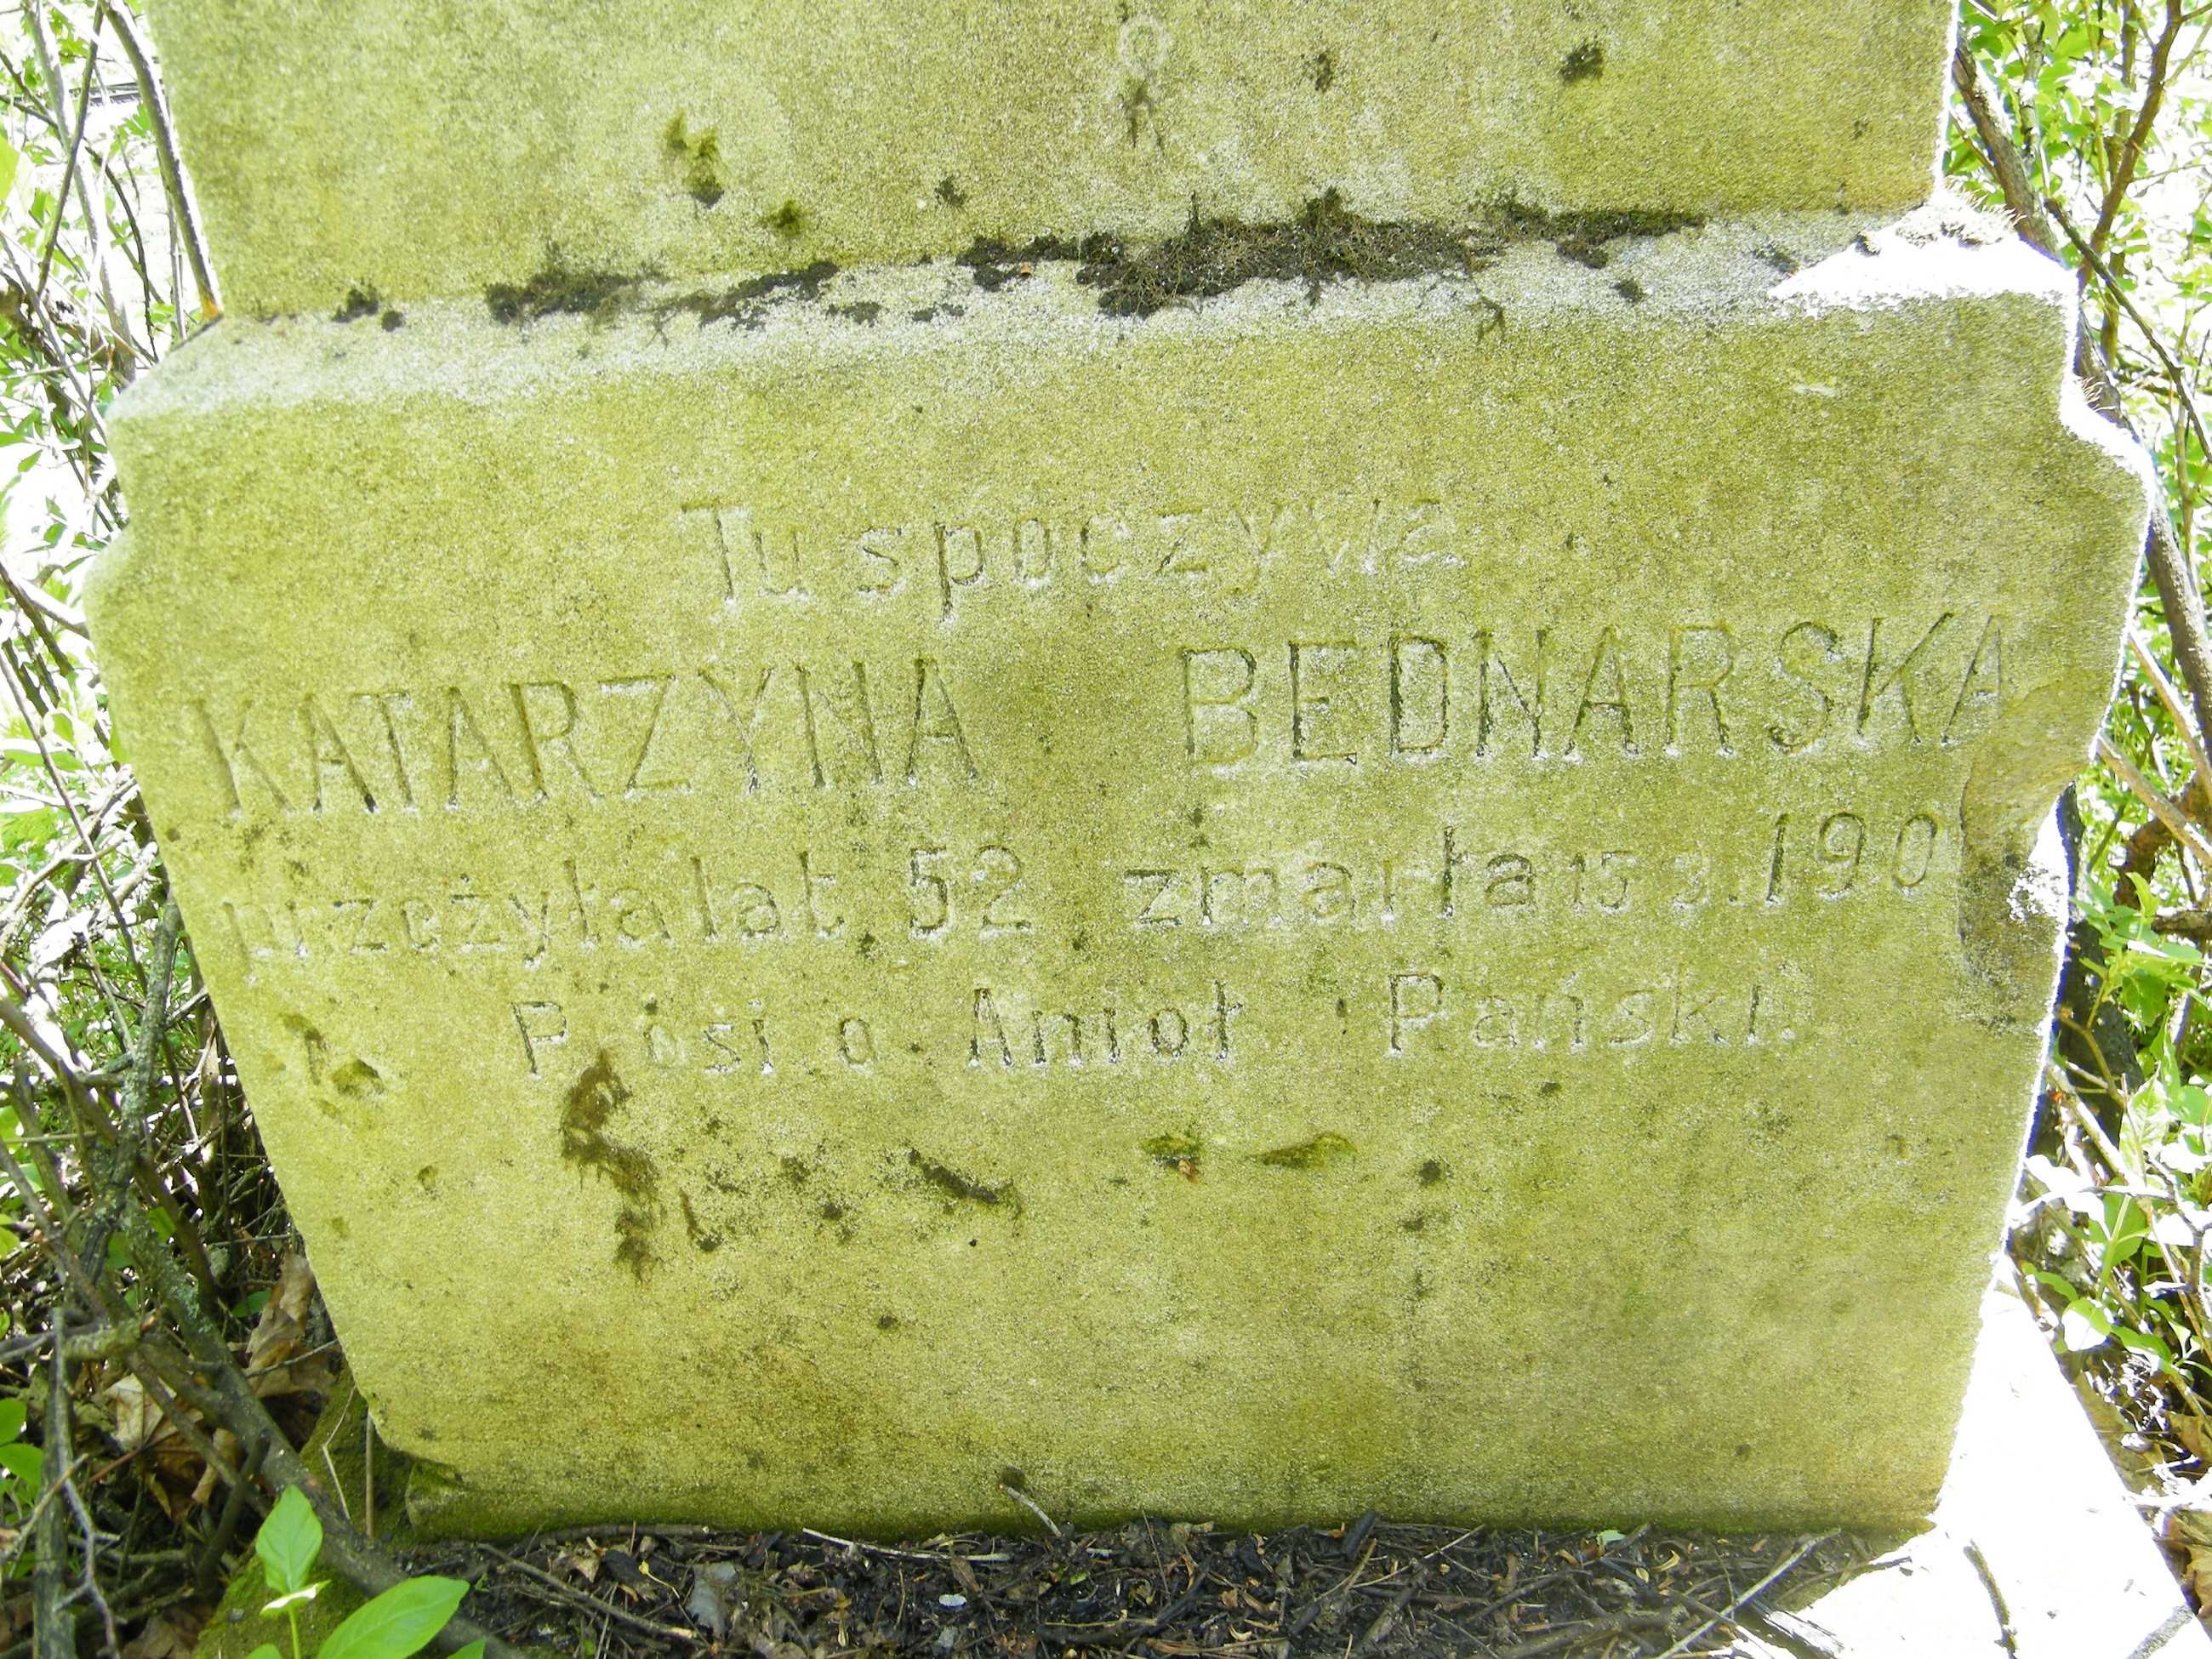 Inskrypcja z nagrobka Katarzyny Bednarskiej, Cmentarz w Łozowej